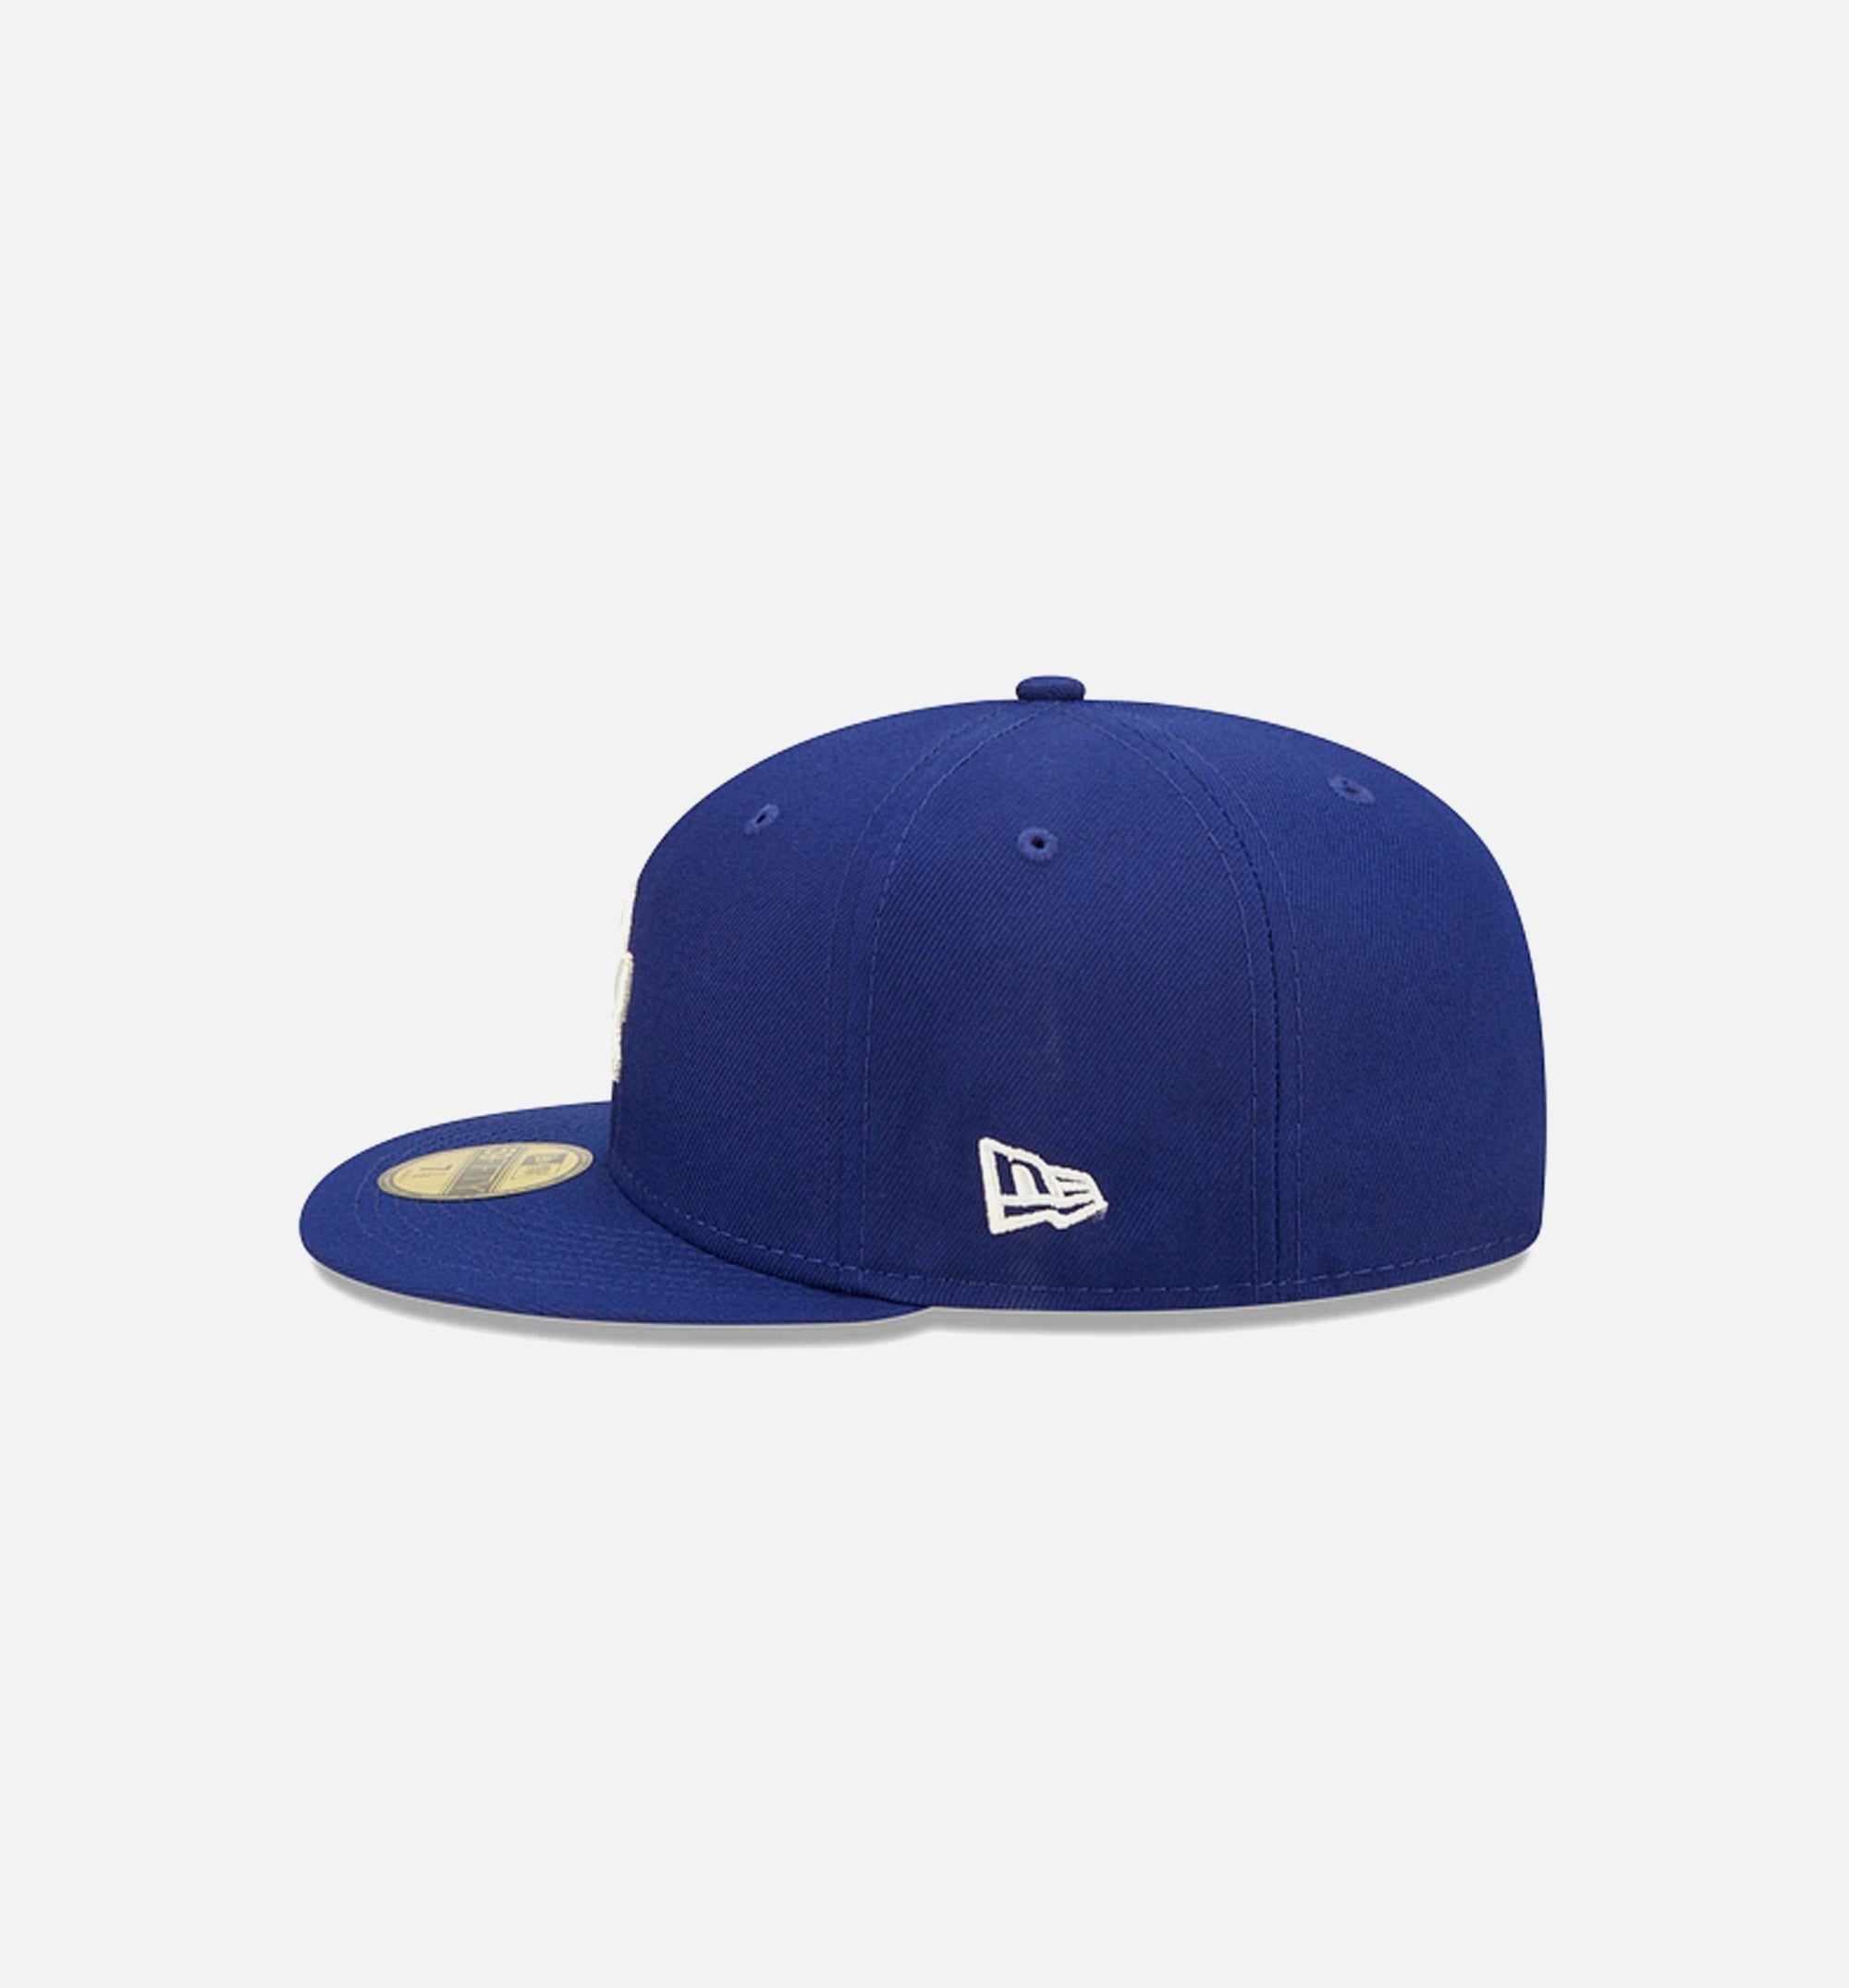 New Era Brooklyn Dodgers Sky Blue Color UV 59FIFTY Cap - Macy's